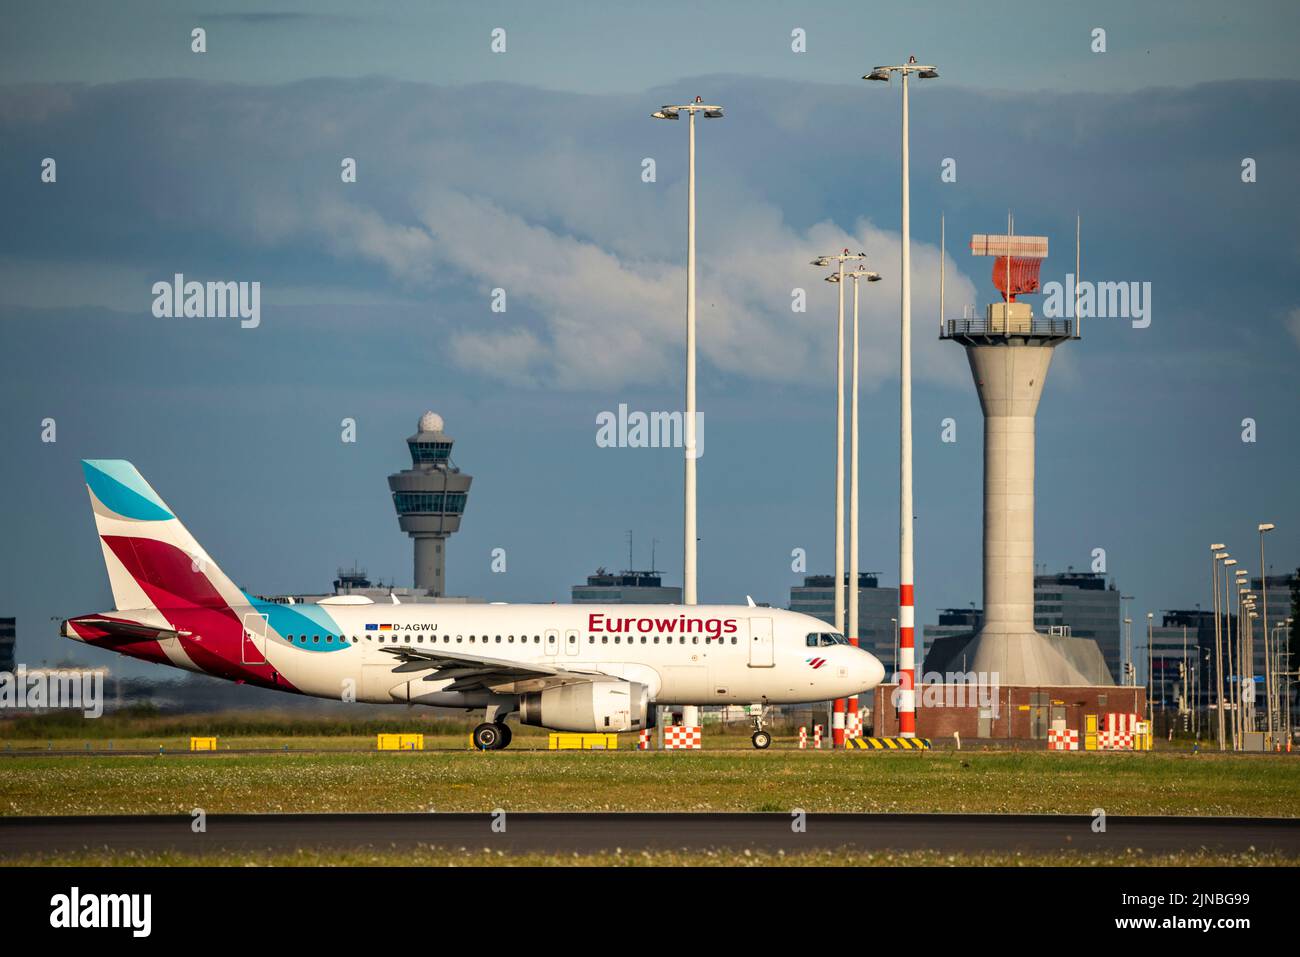 Amsterdam Shiphol Airport, Polderbaan, eine von 6 Start- und Landebahnen, Flugsicherungsturm, D-AGWU, Eurowings Airbus A319-100, auf dem Rollweg zum Start, Stockfoto